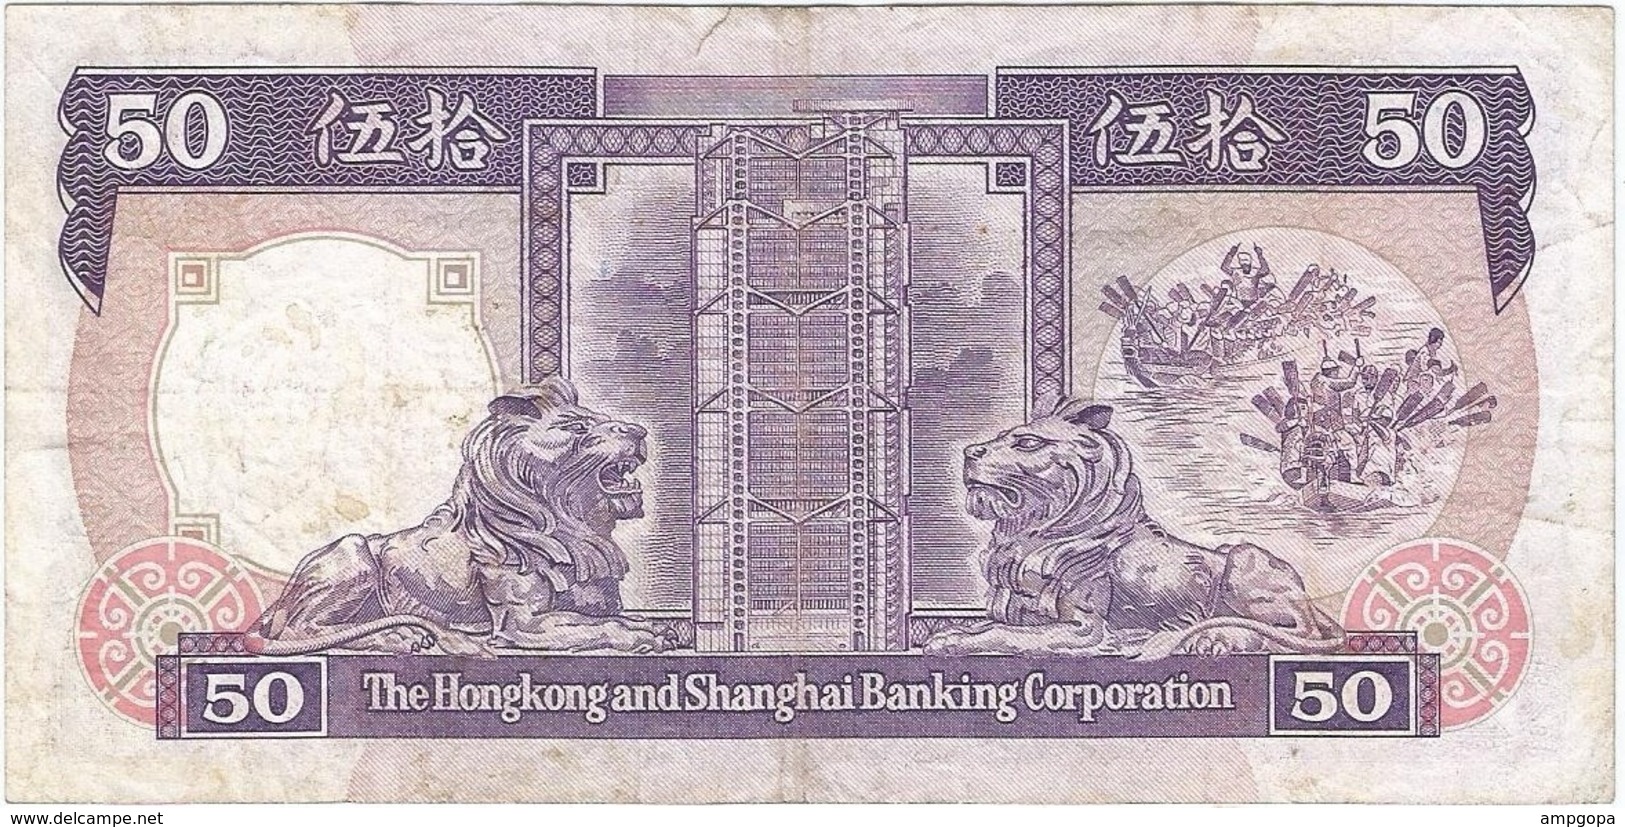 Hong Kong (Gran Bretaña) 50 Dollars 1-1-1987 Pk 193 A.3 Titulo Firma GENERAL MANAGER Ref 3183-2 - Hong Kong